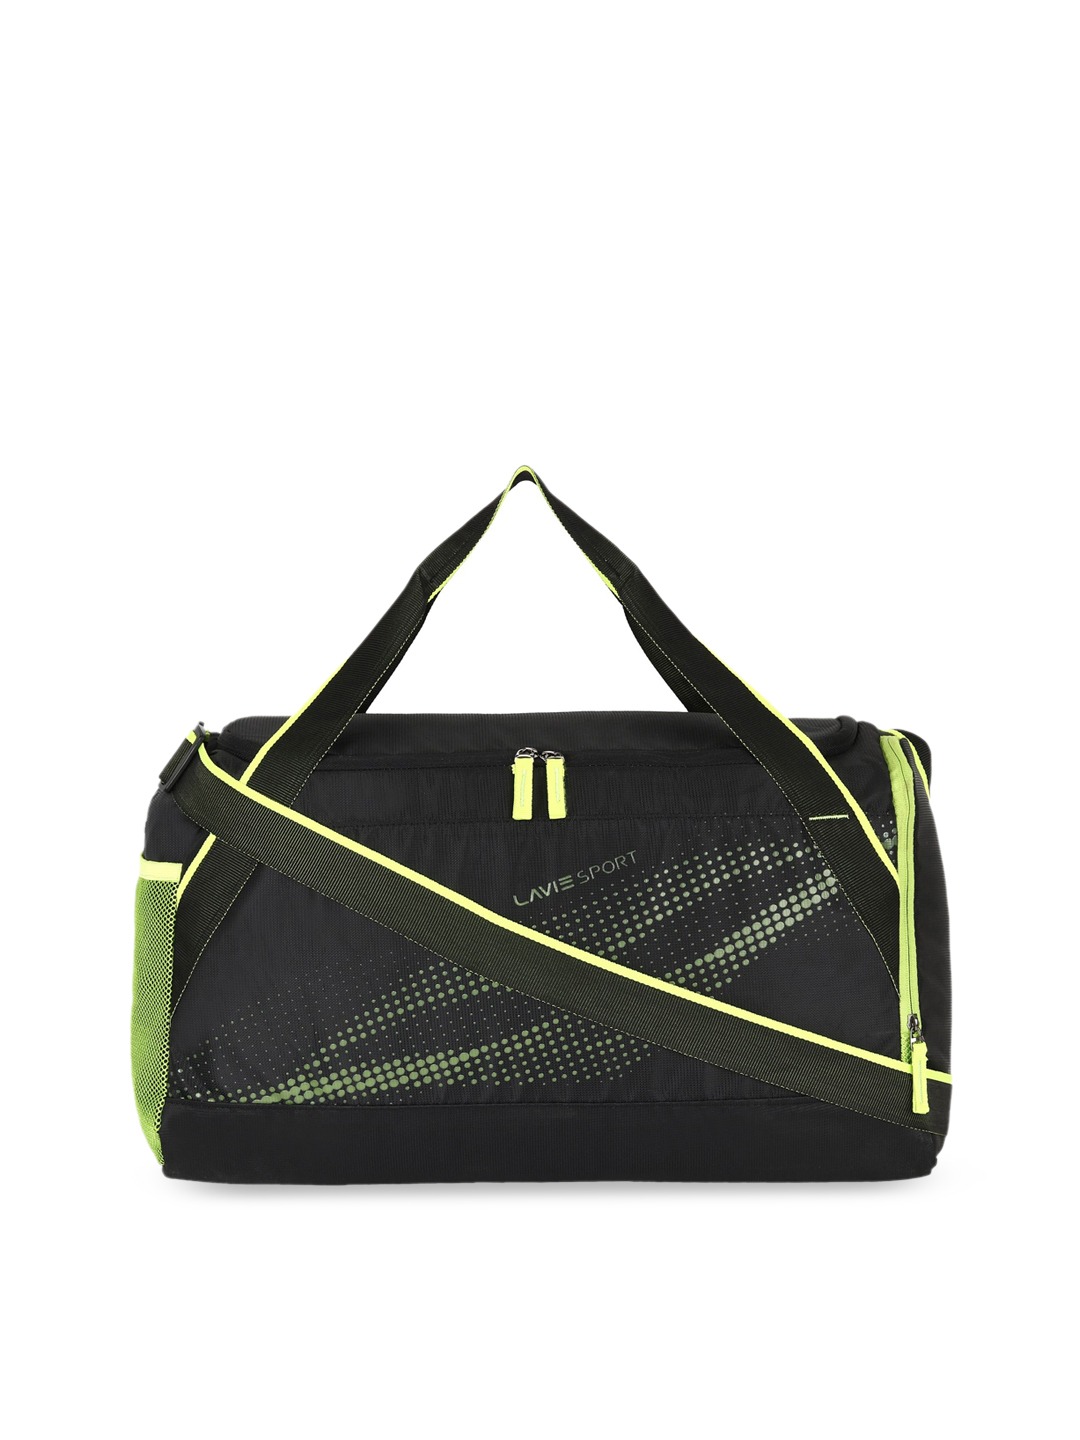 Accessories Duffel Bag | Lavie Black & Yellow Printed Duffel Bag - PB22864